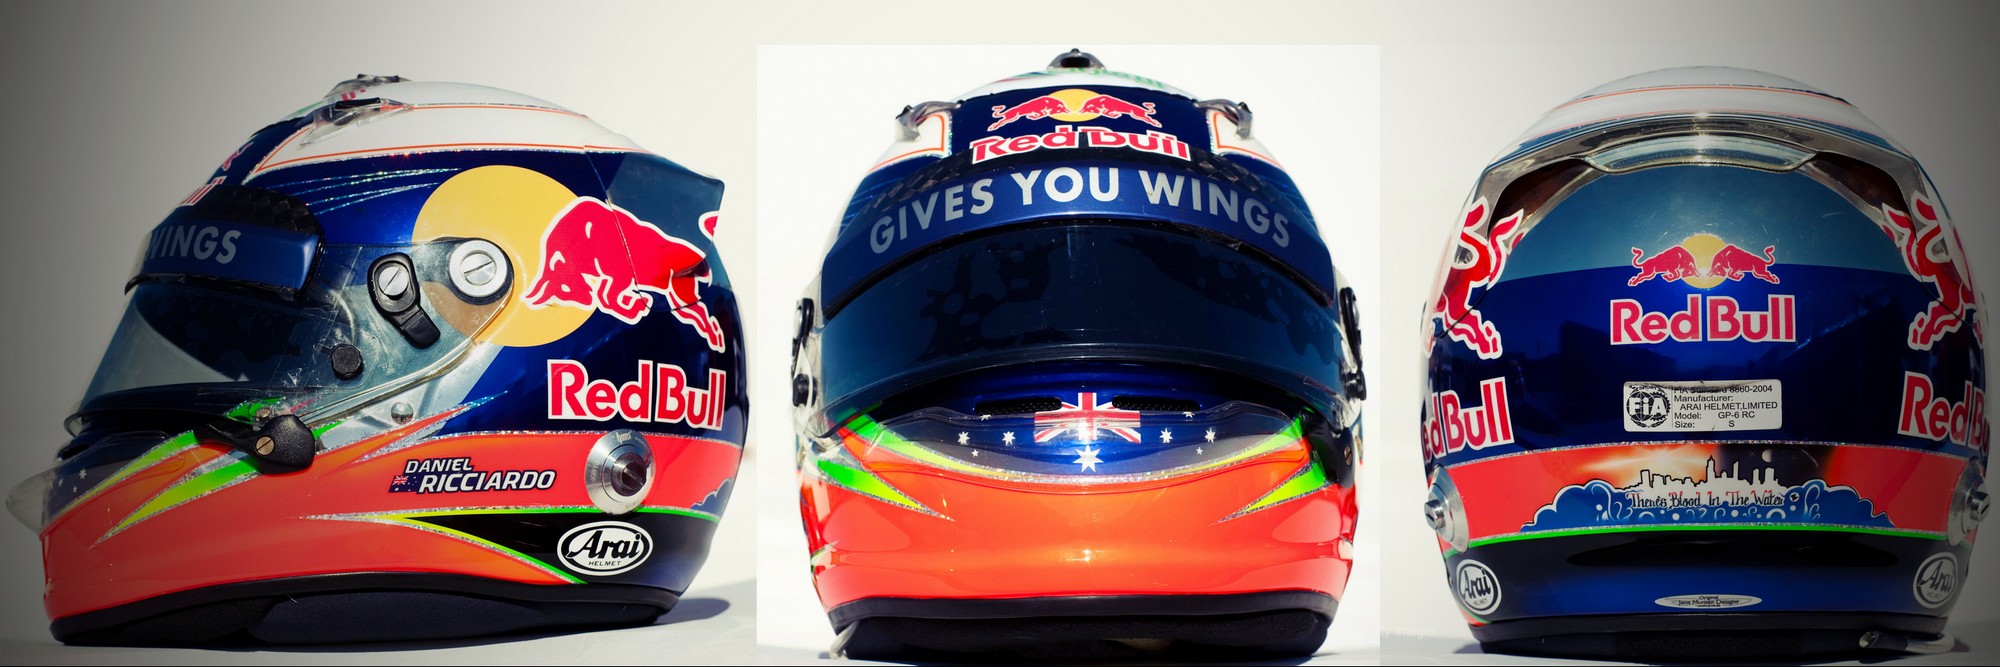 Шлем Даниэля Риккьярдо на сезон 2012 года | 2012 helmet of Daniel Ricciardo